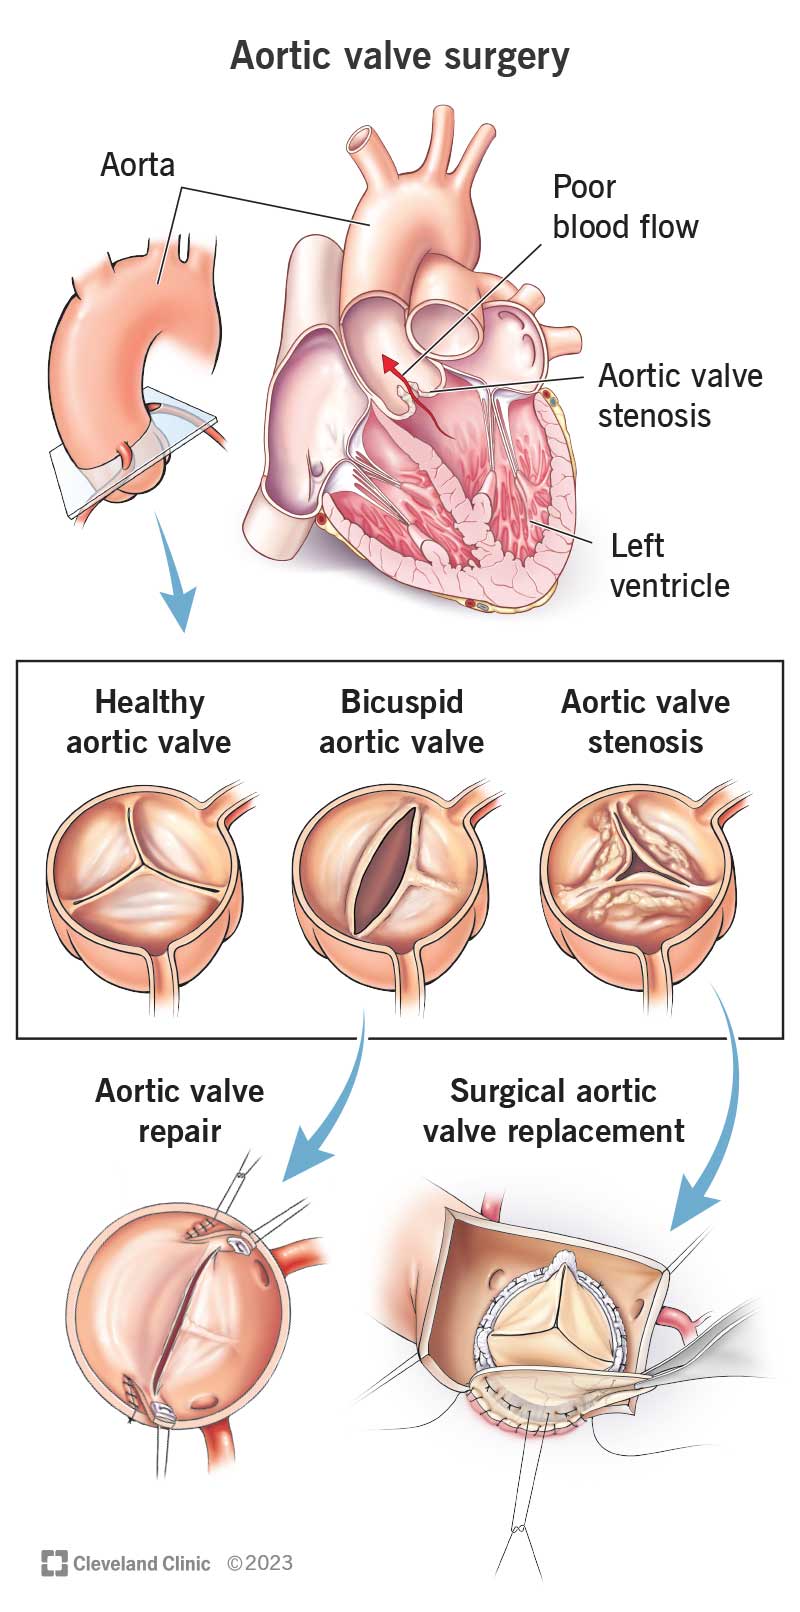 Aortic valve repair and replacement.